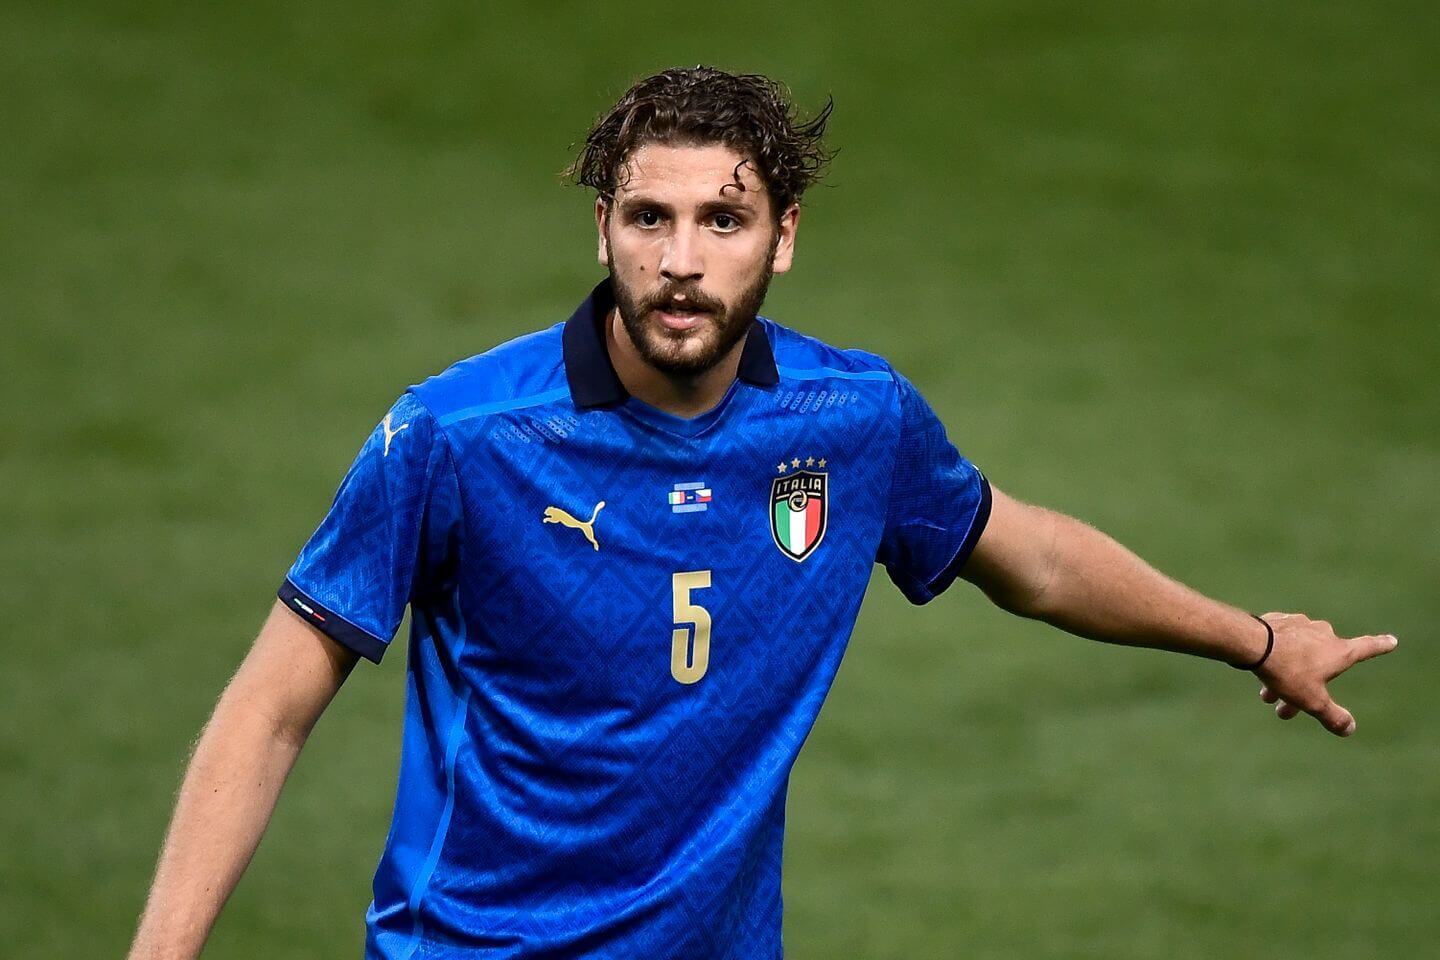 ساسولو/هافبک ایتالیایی/Sassuolo/Italian midfielder